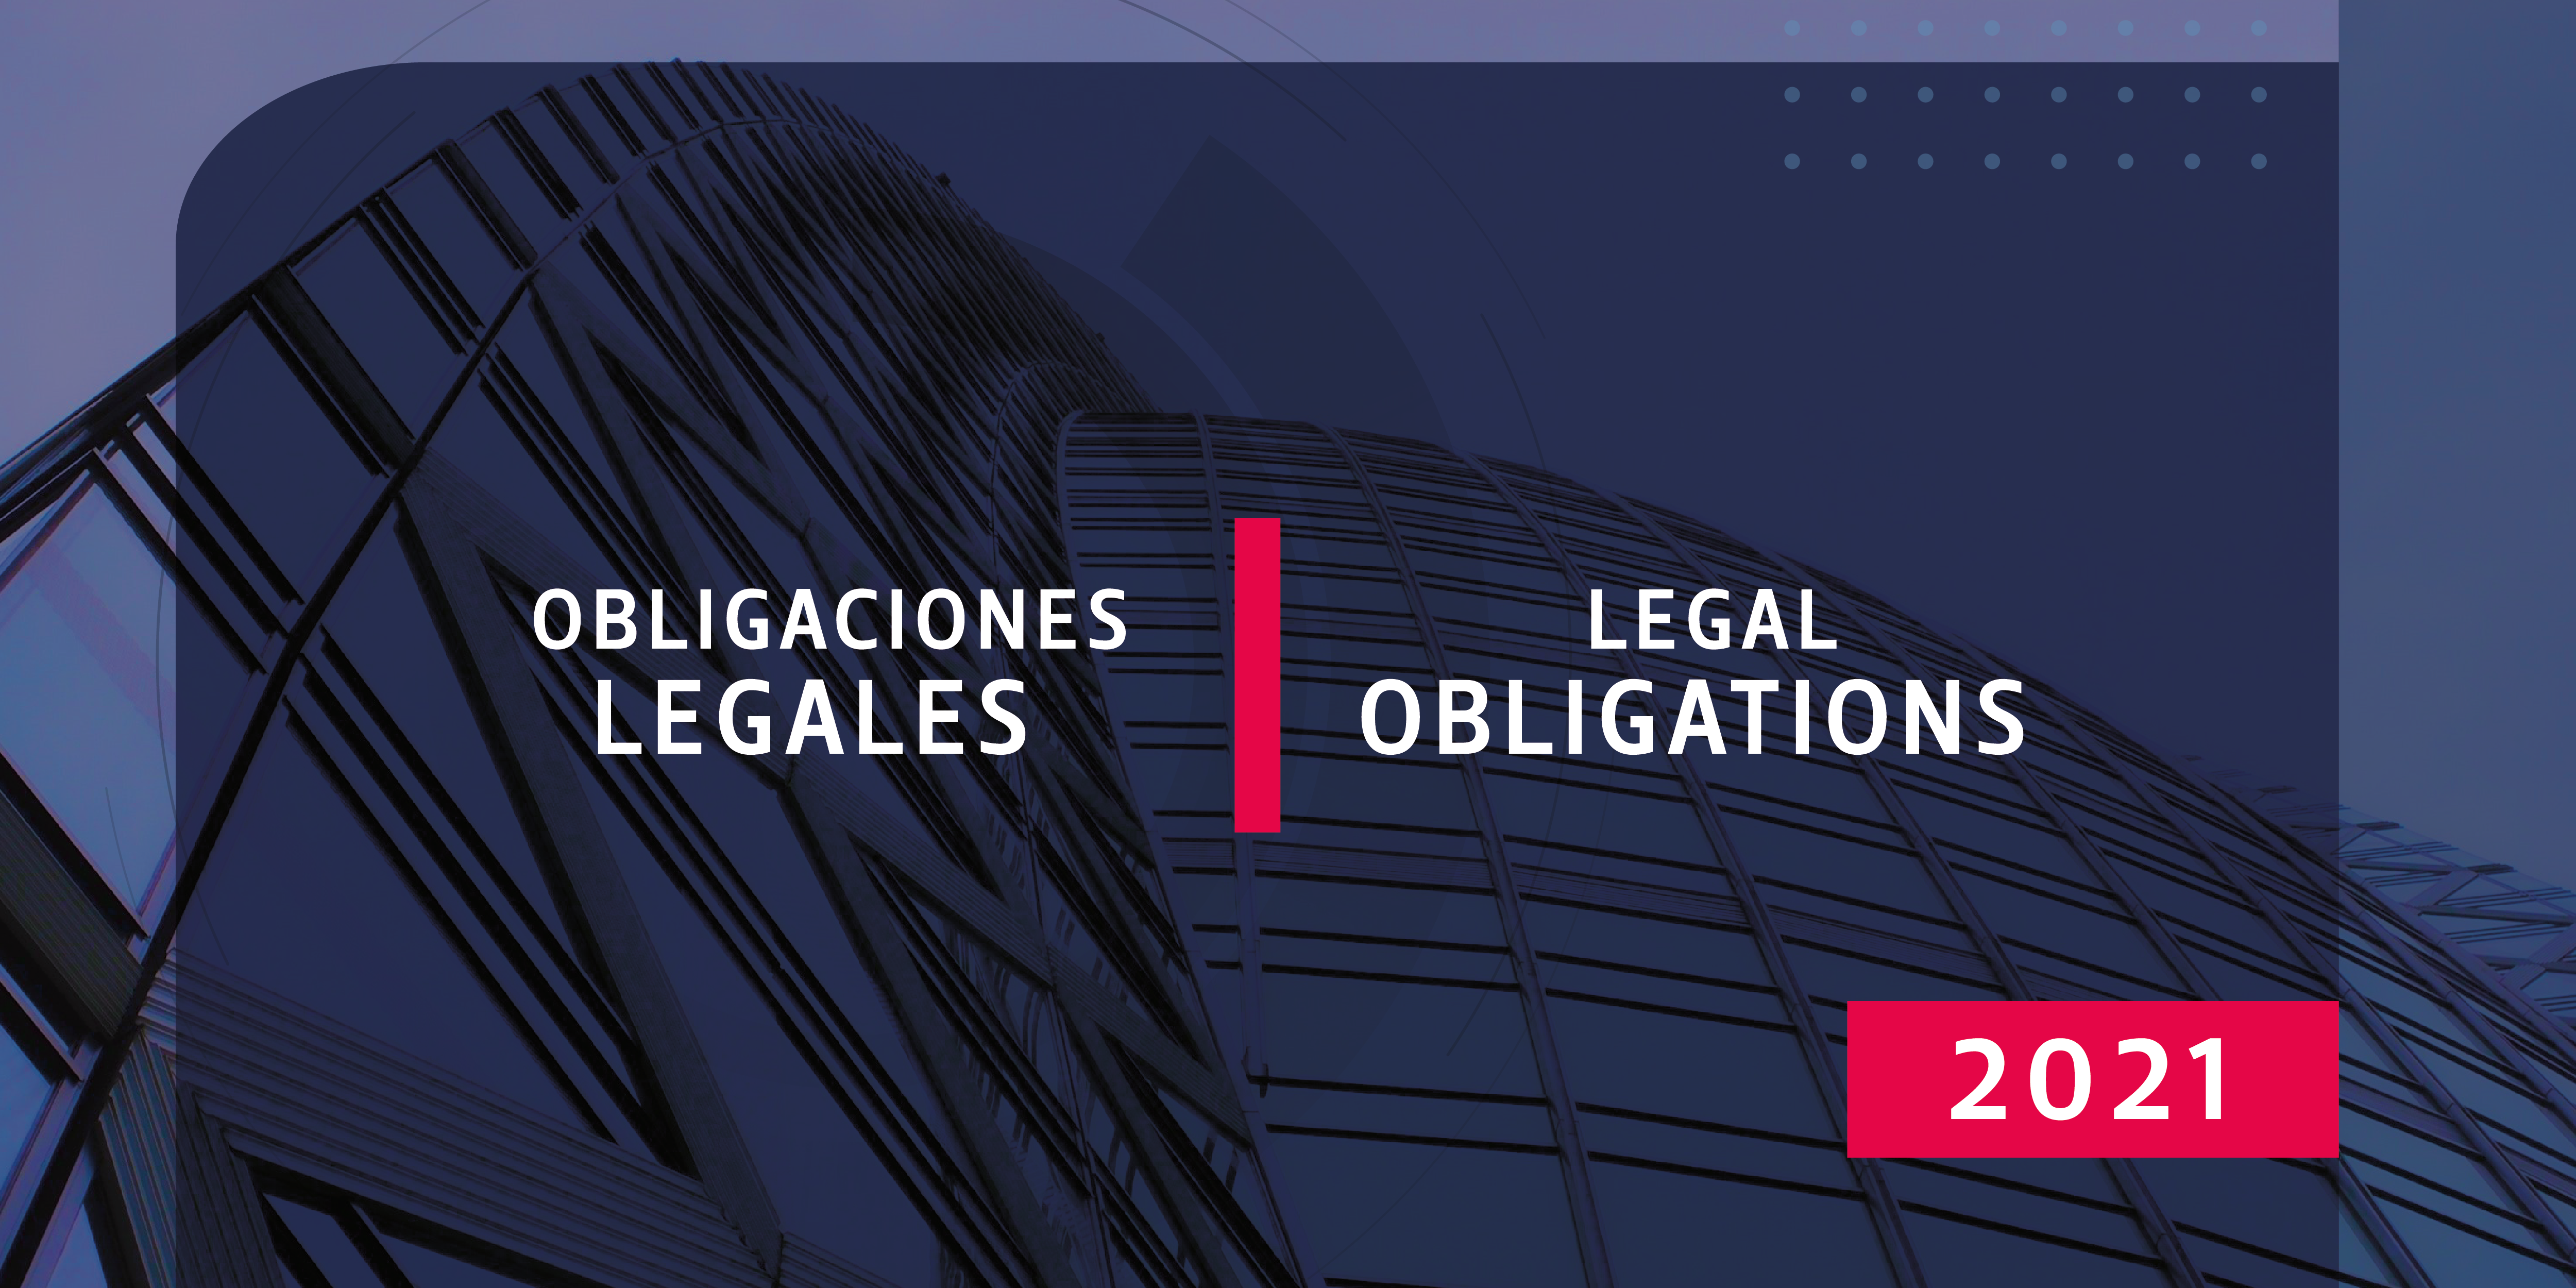  Obligaciones legales en Colombia 2021